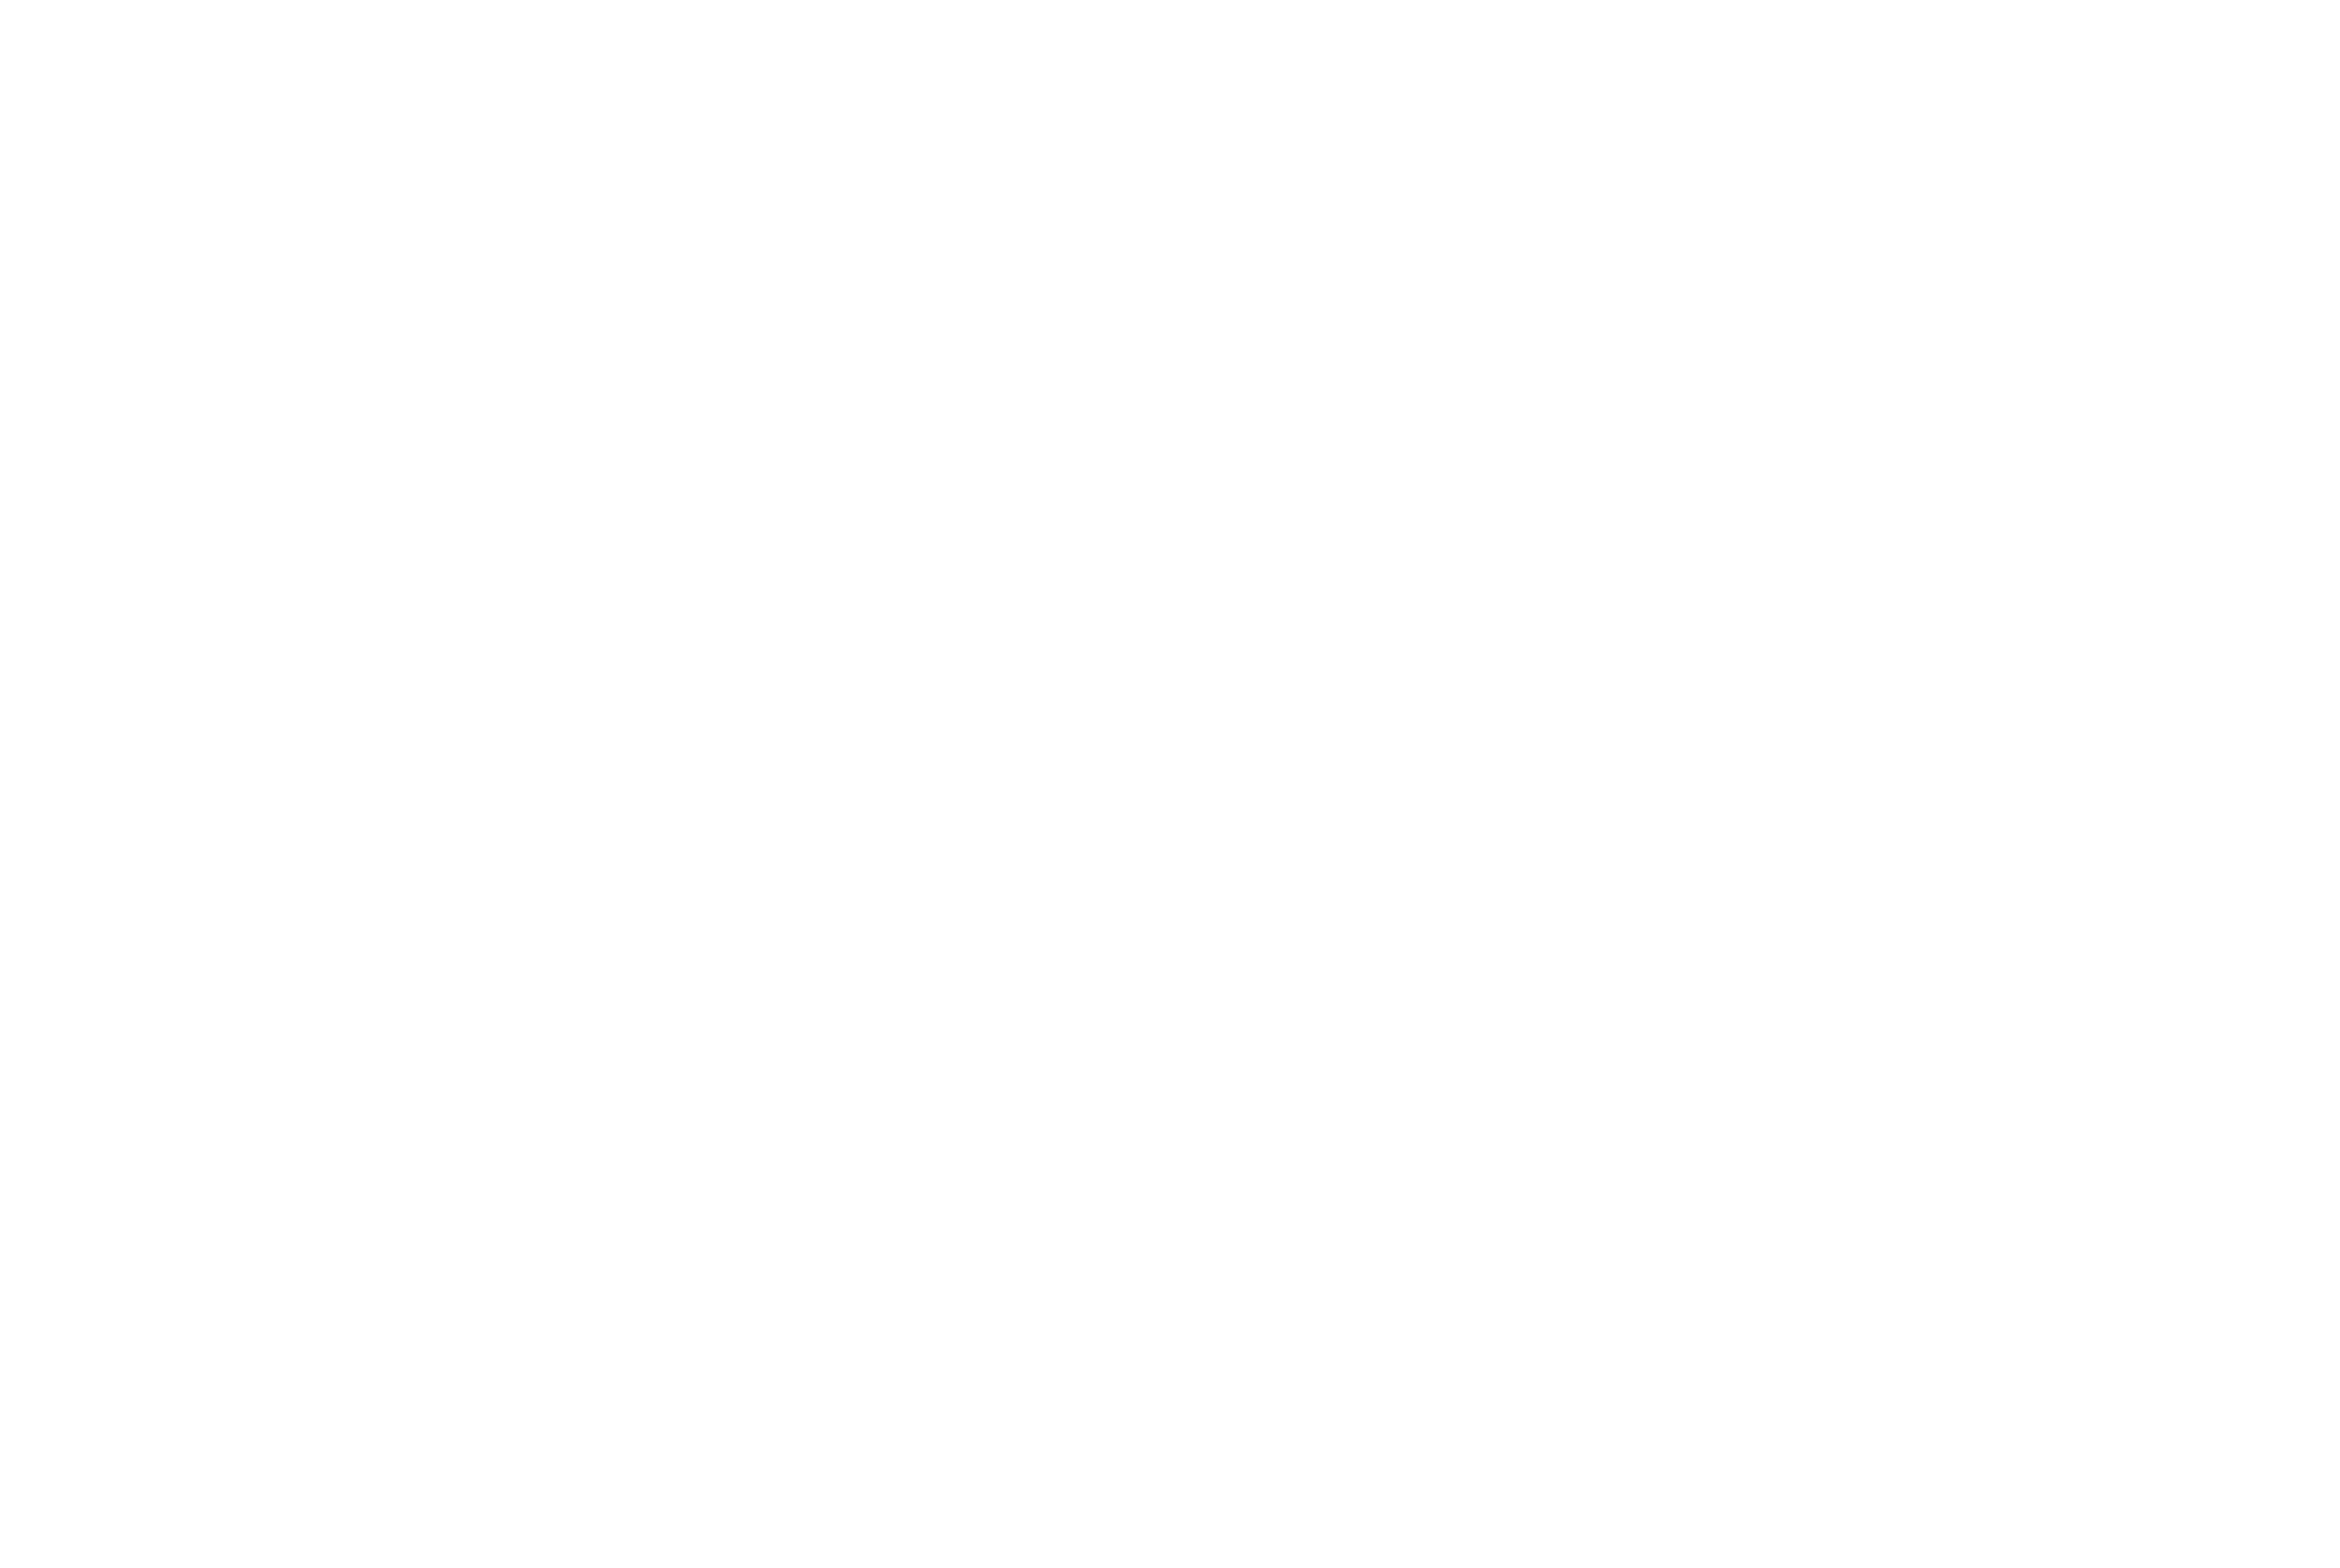 RAAF&KOEKOEK